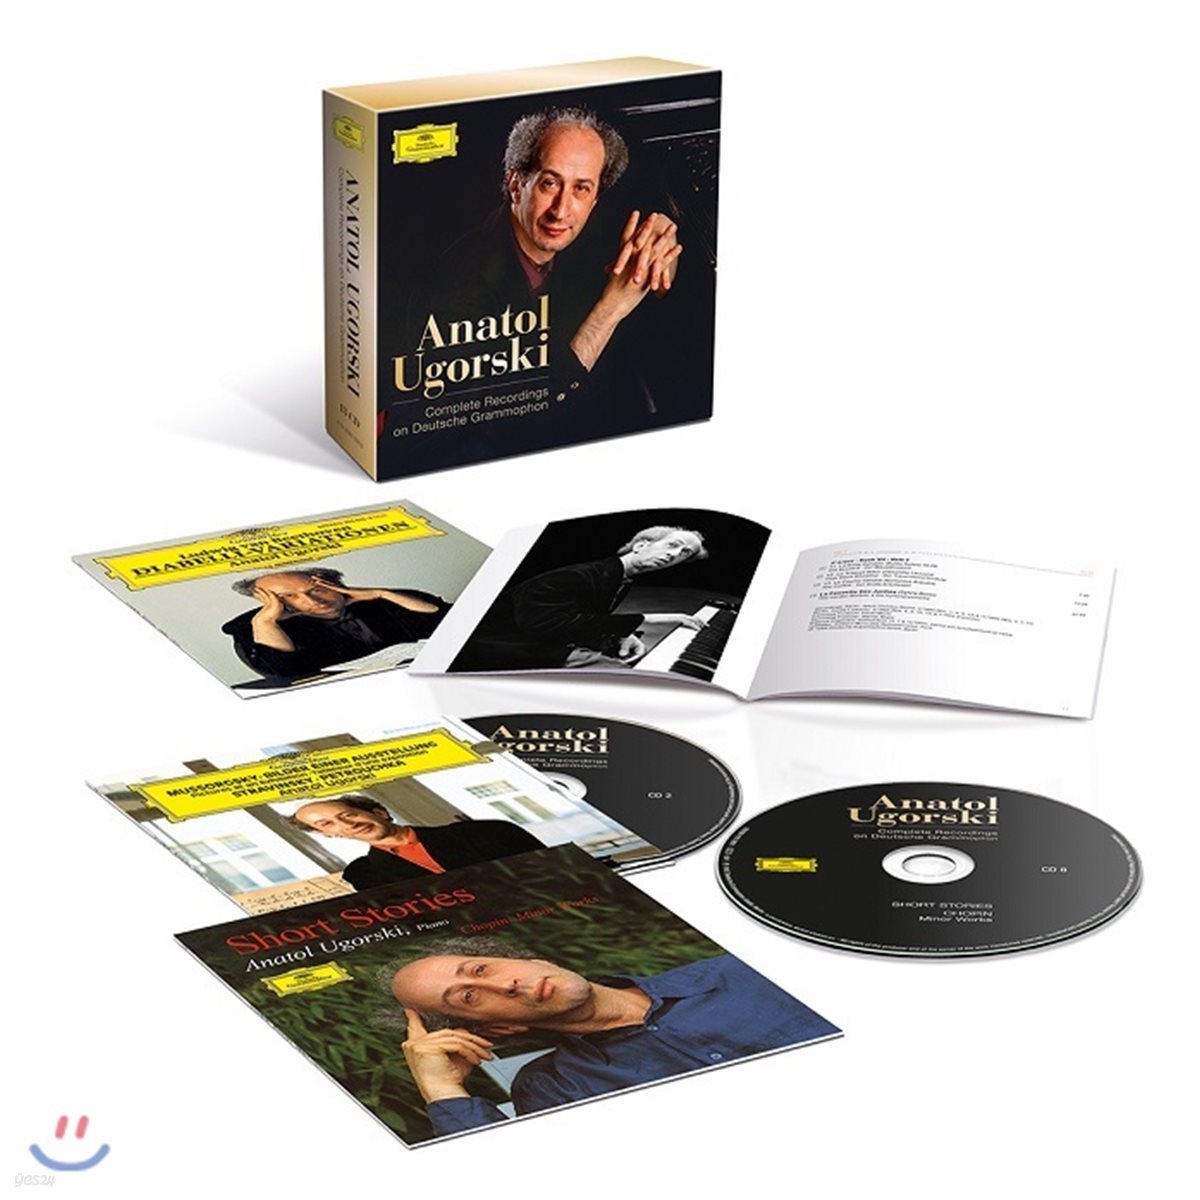 아나톨 우고르스키 DG 녹음 전집 (Anatol Ugorski - Complete Recordings on Deutsche Grammophon)